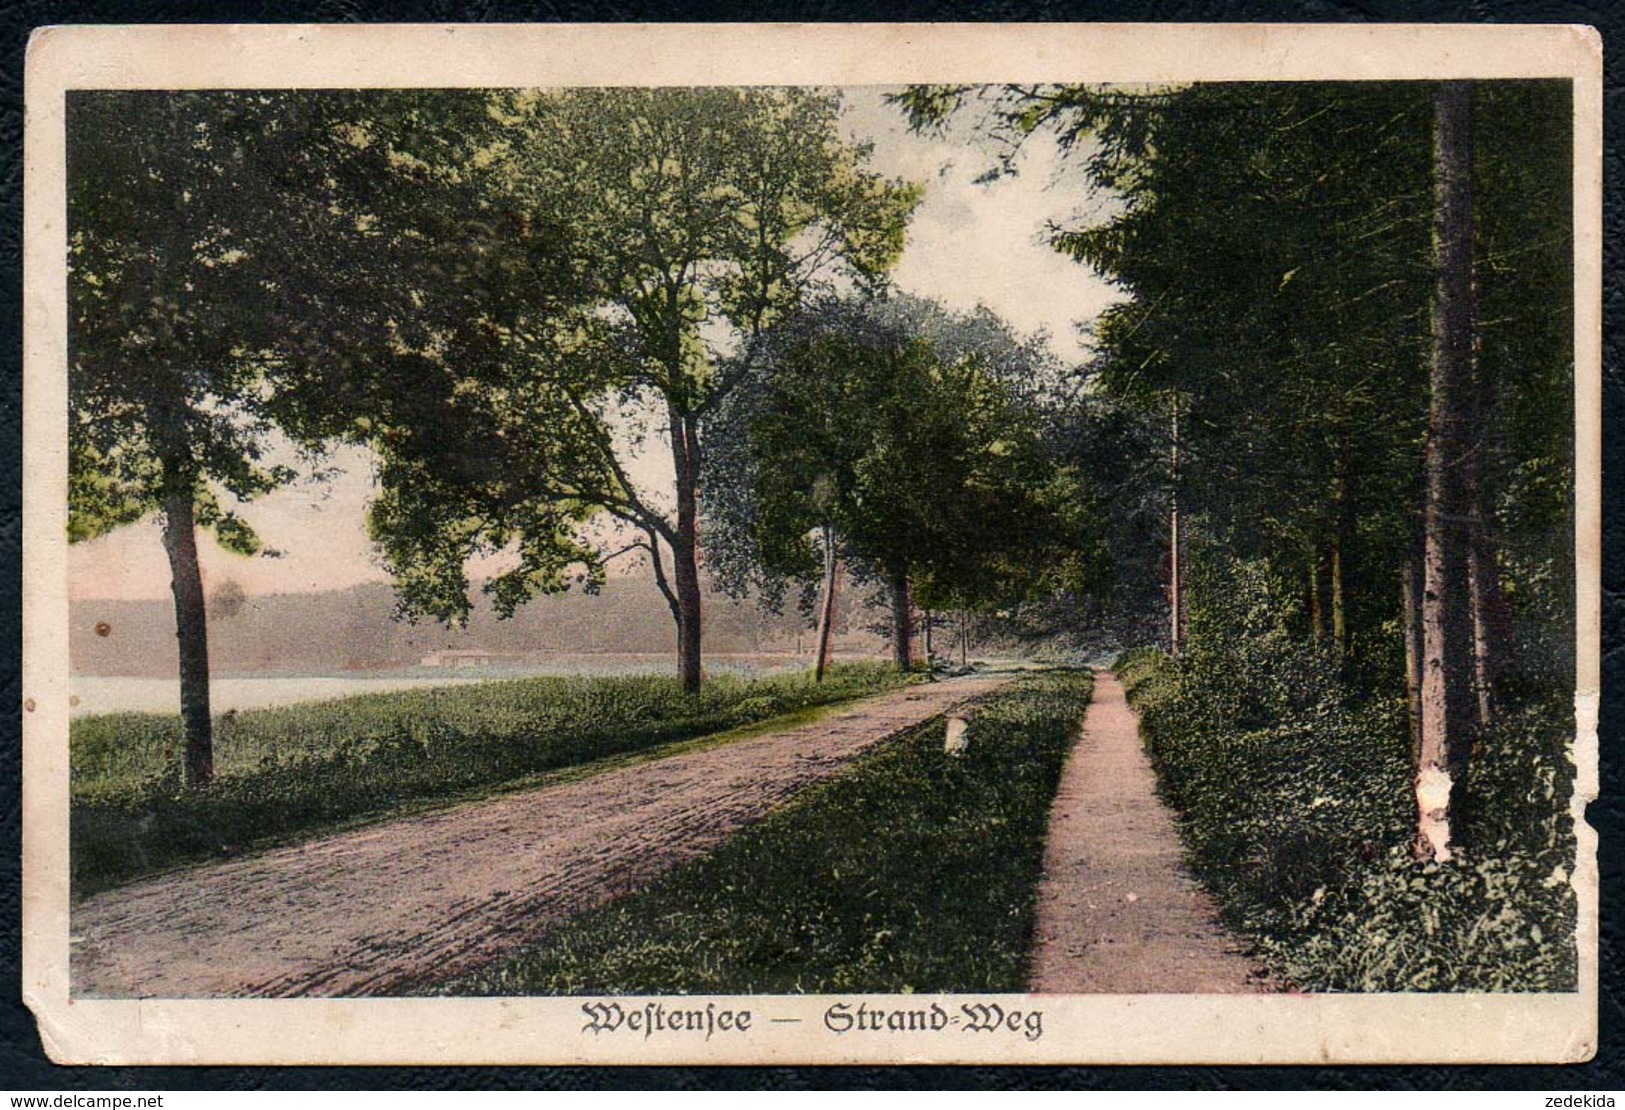 B2614 - Westensee - Strand Weg - Gel 1916 - Hermann Arbien Kiel - Rendsburg